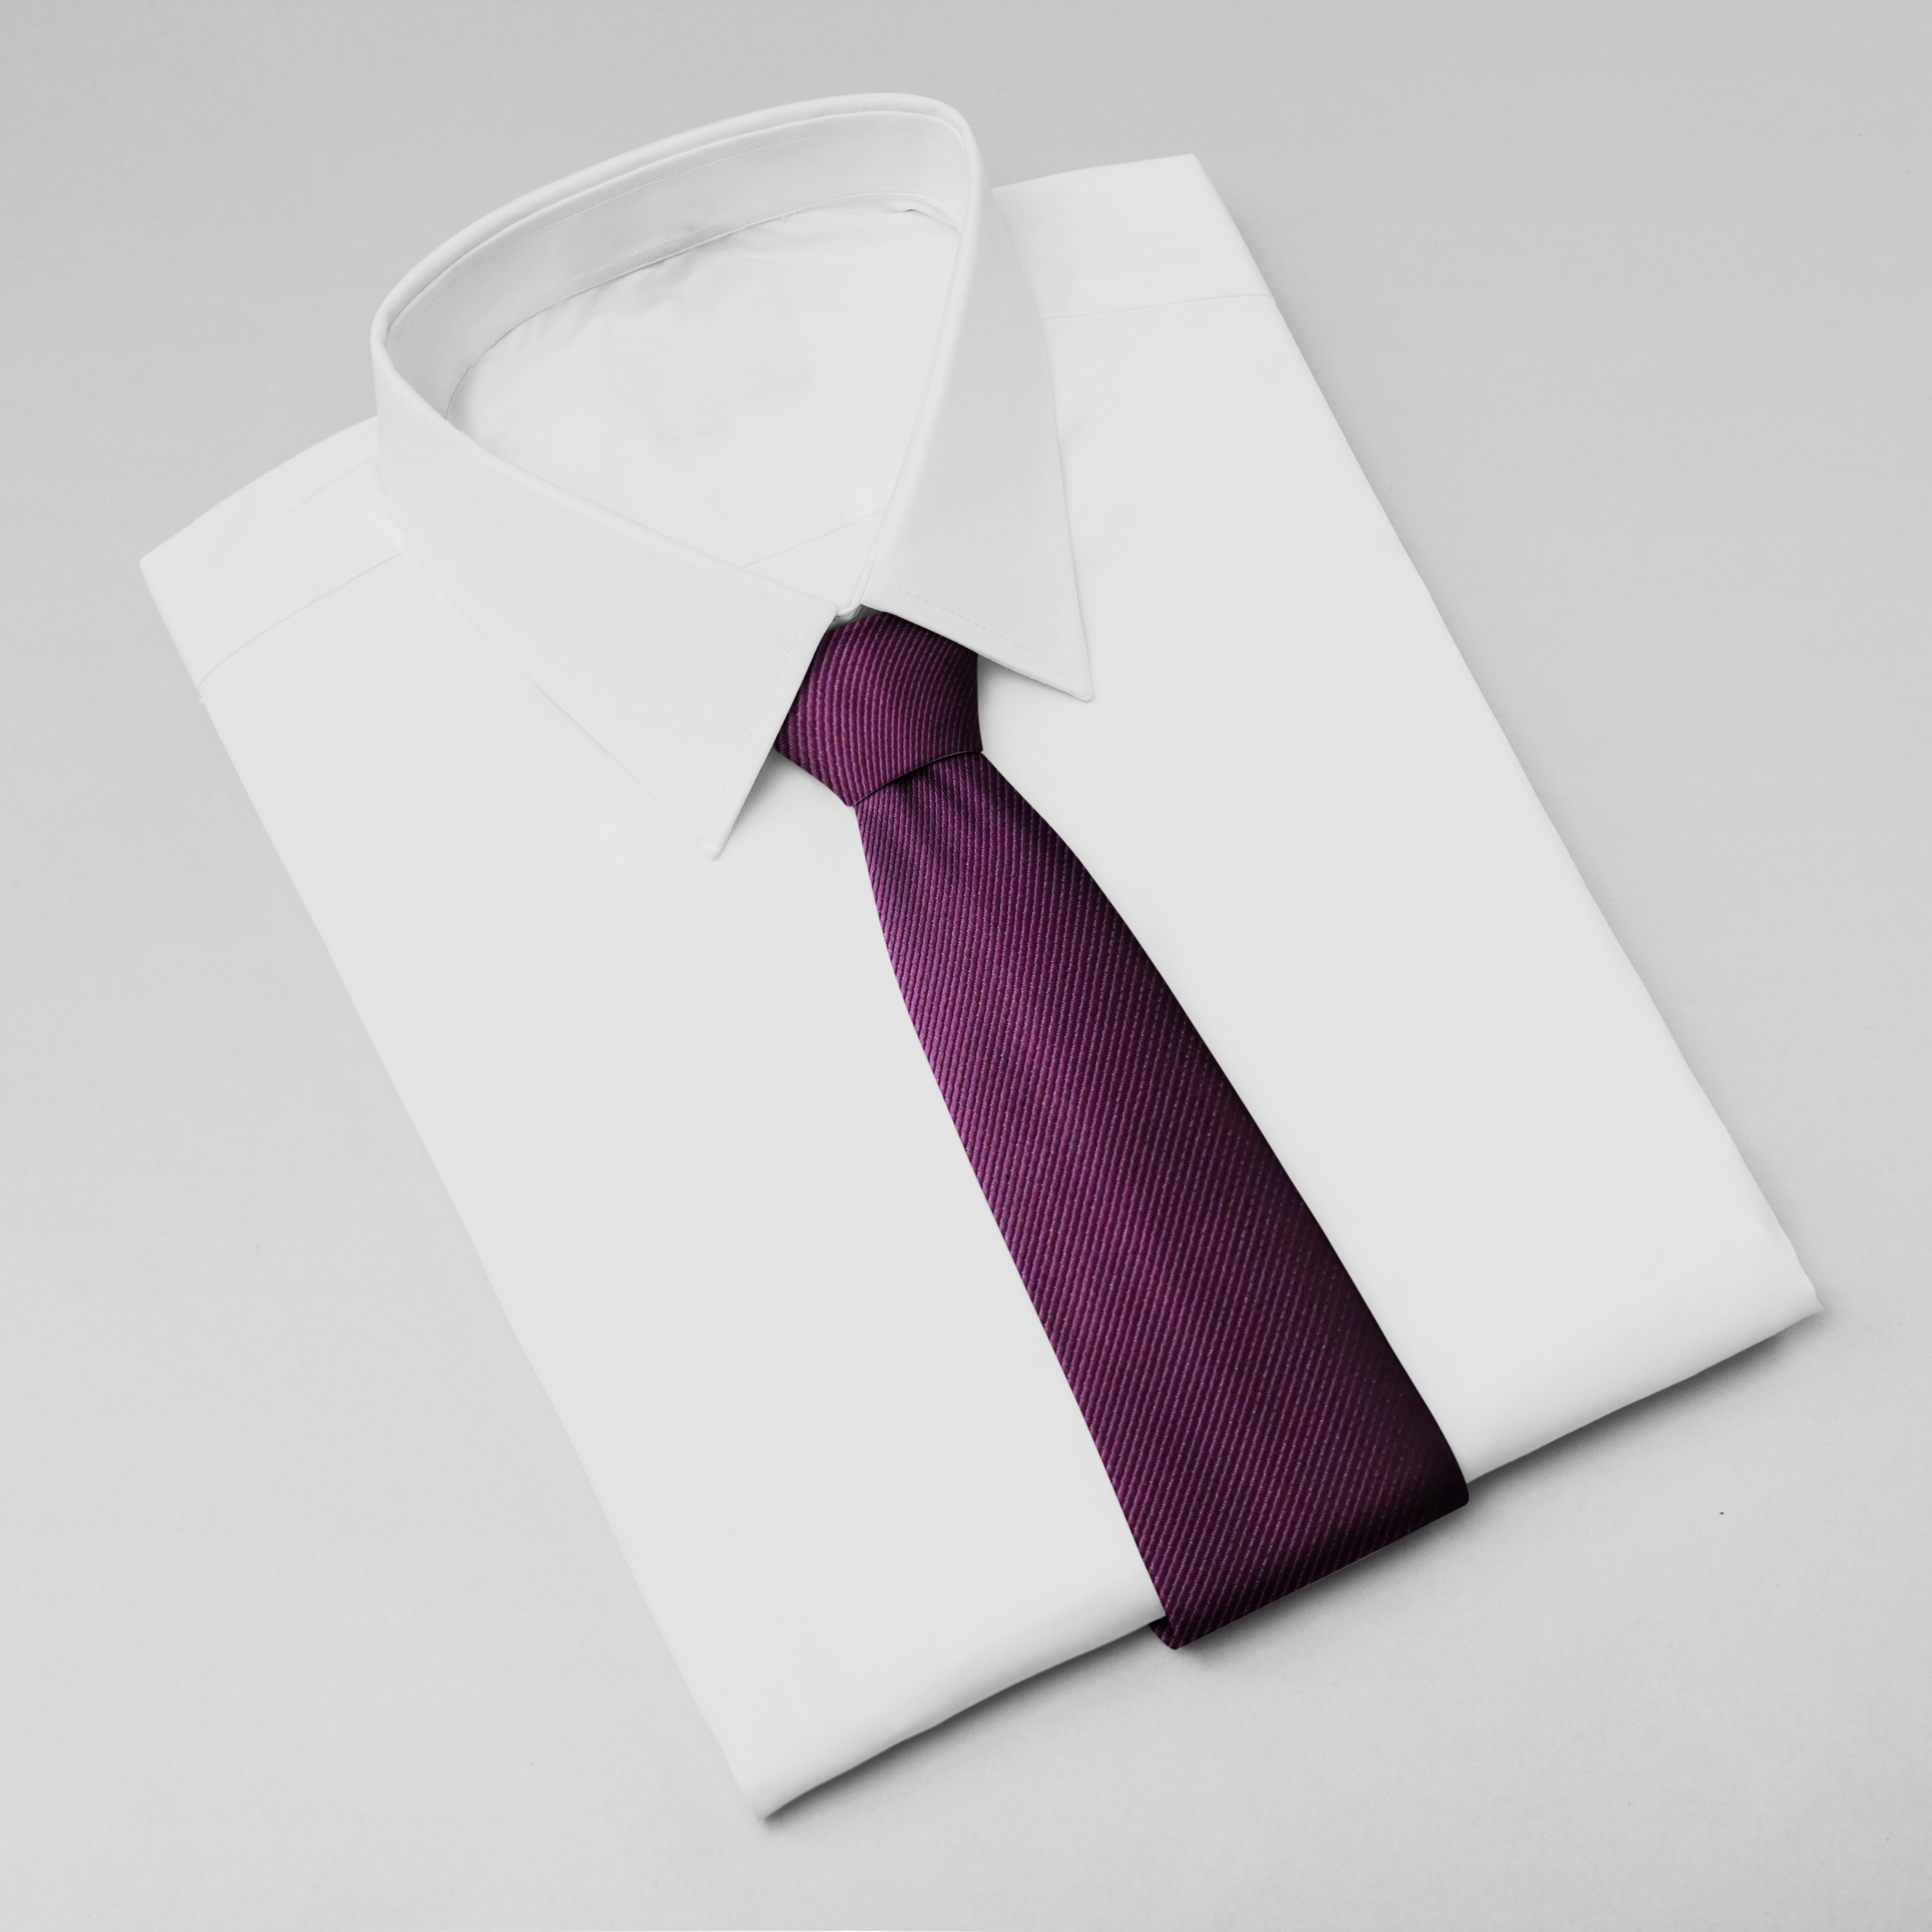 Cà vạt nam, cà vạt bản nhỏ, cà vạt 6cm-Cà vạt lẻ bản nhỏ 6cm màu tím trơn